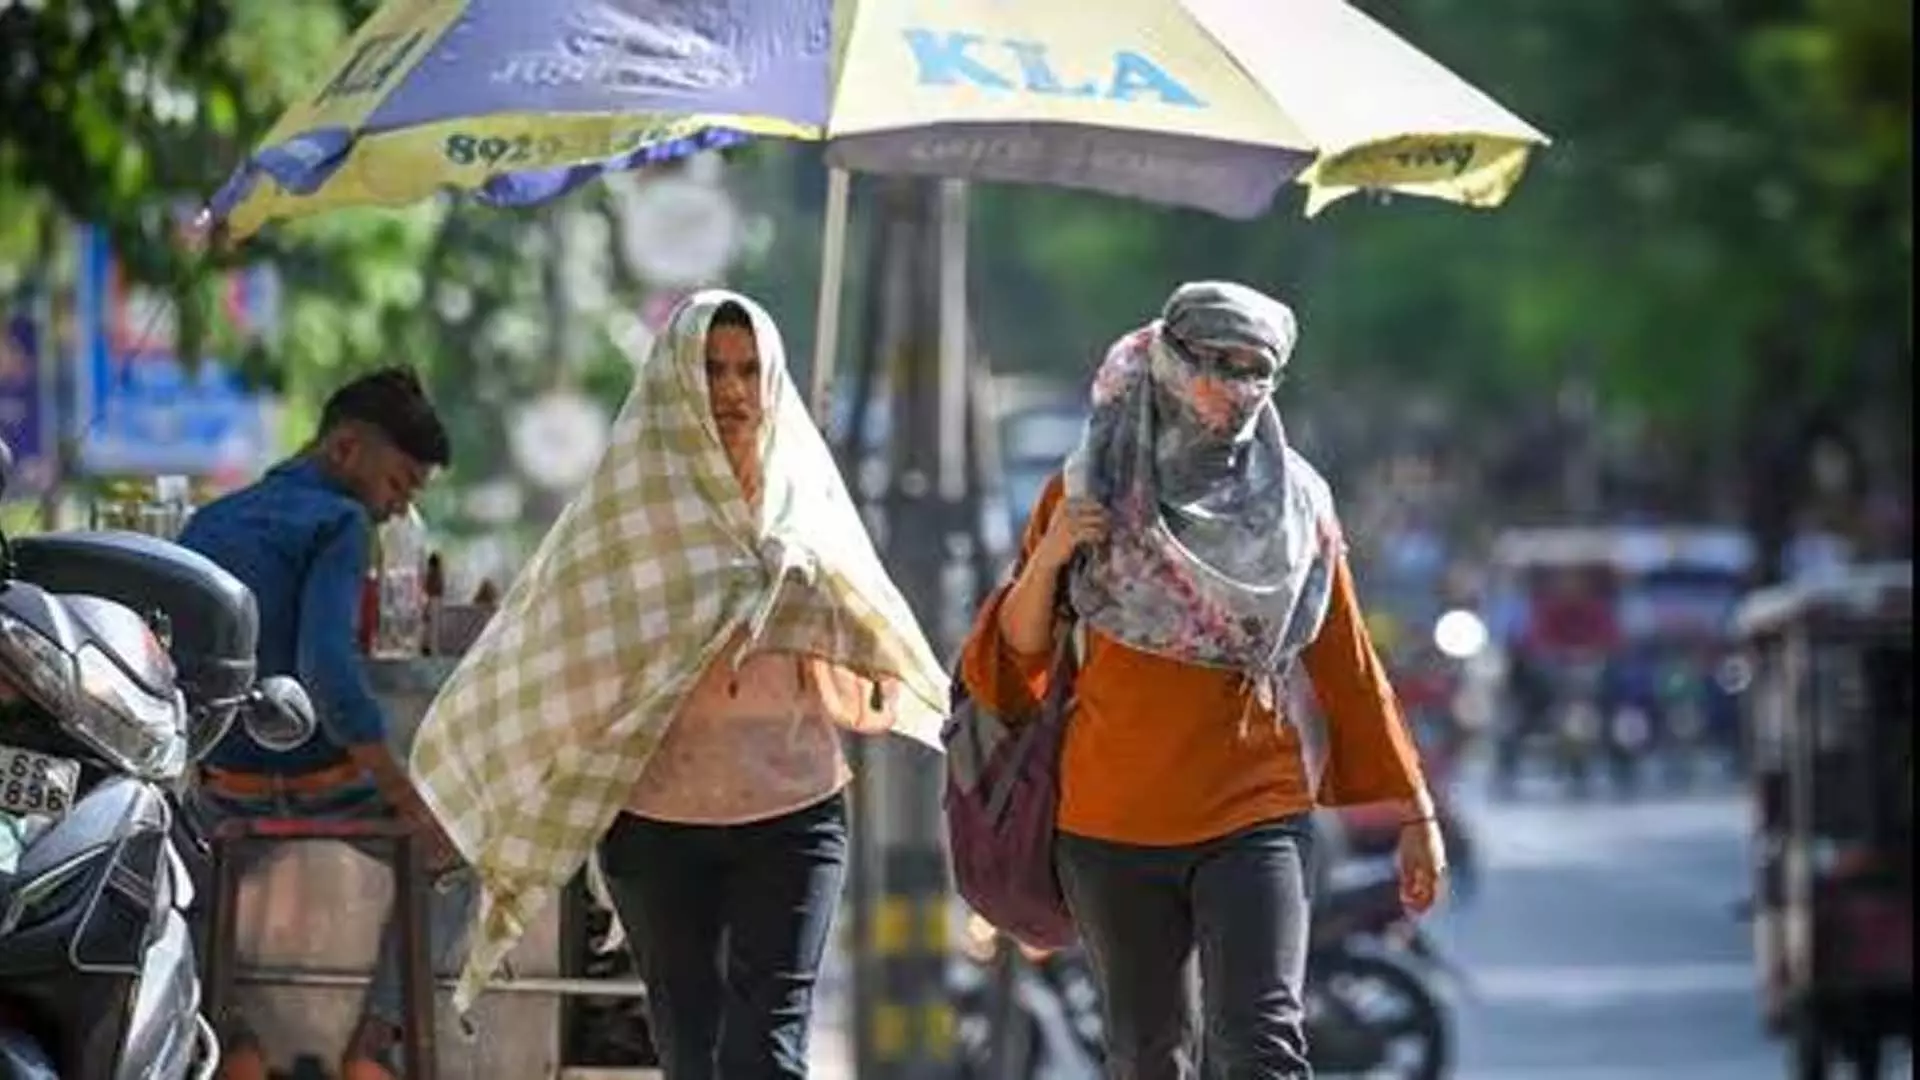 दिल्ली में सप्ताहांत की बारिश से पहले पारा बढ़कर 38 डिग्री सेल्सियस तक पंहुचा